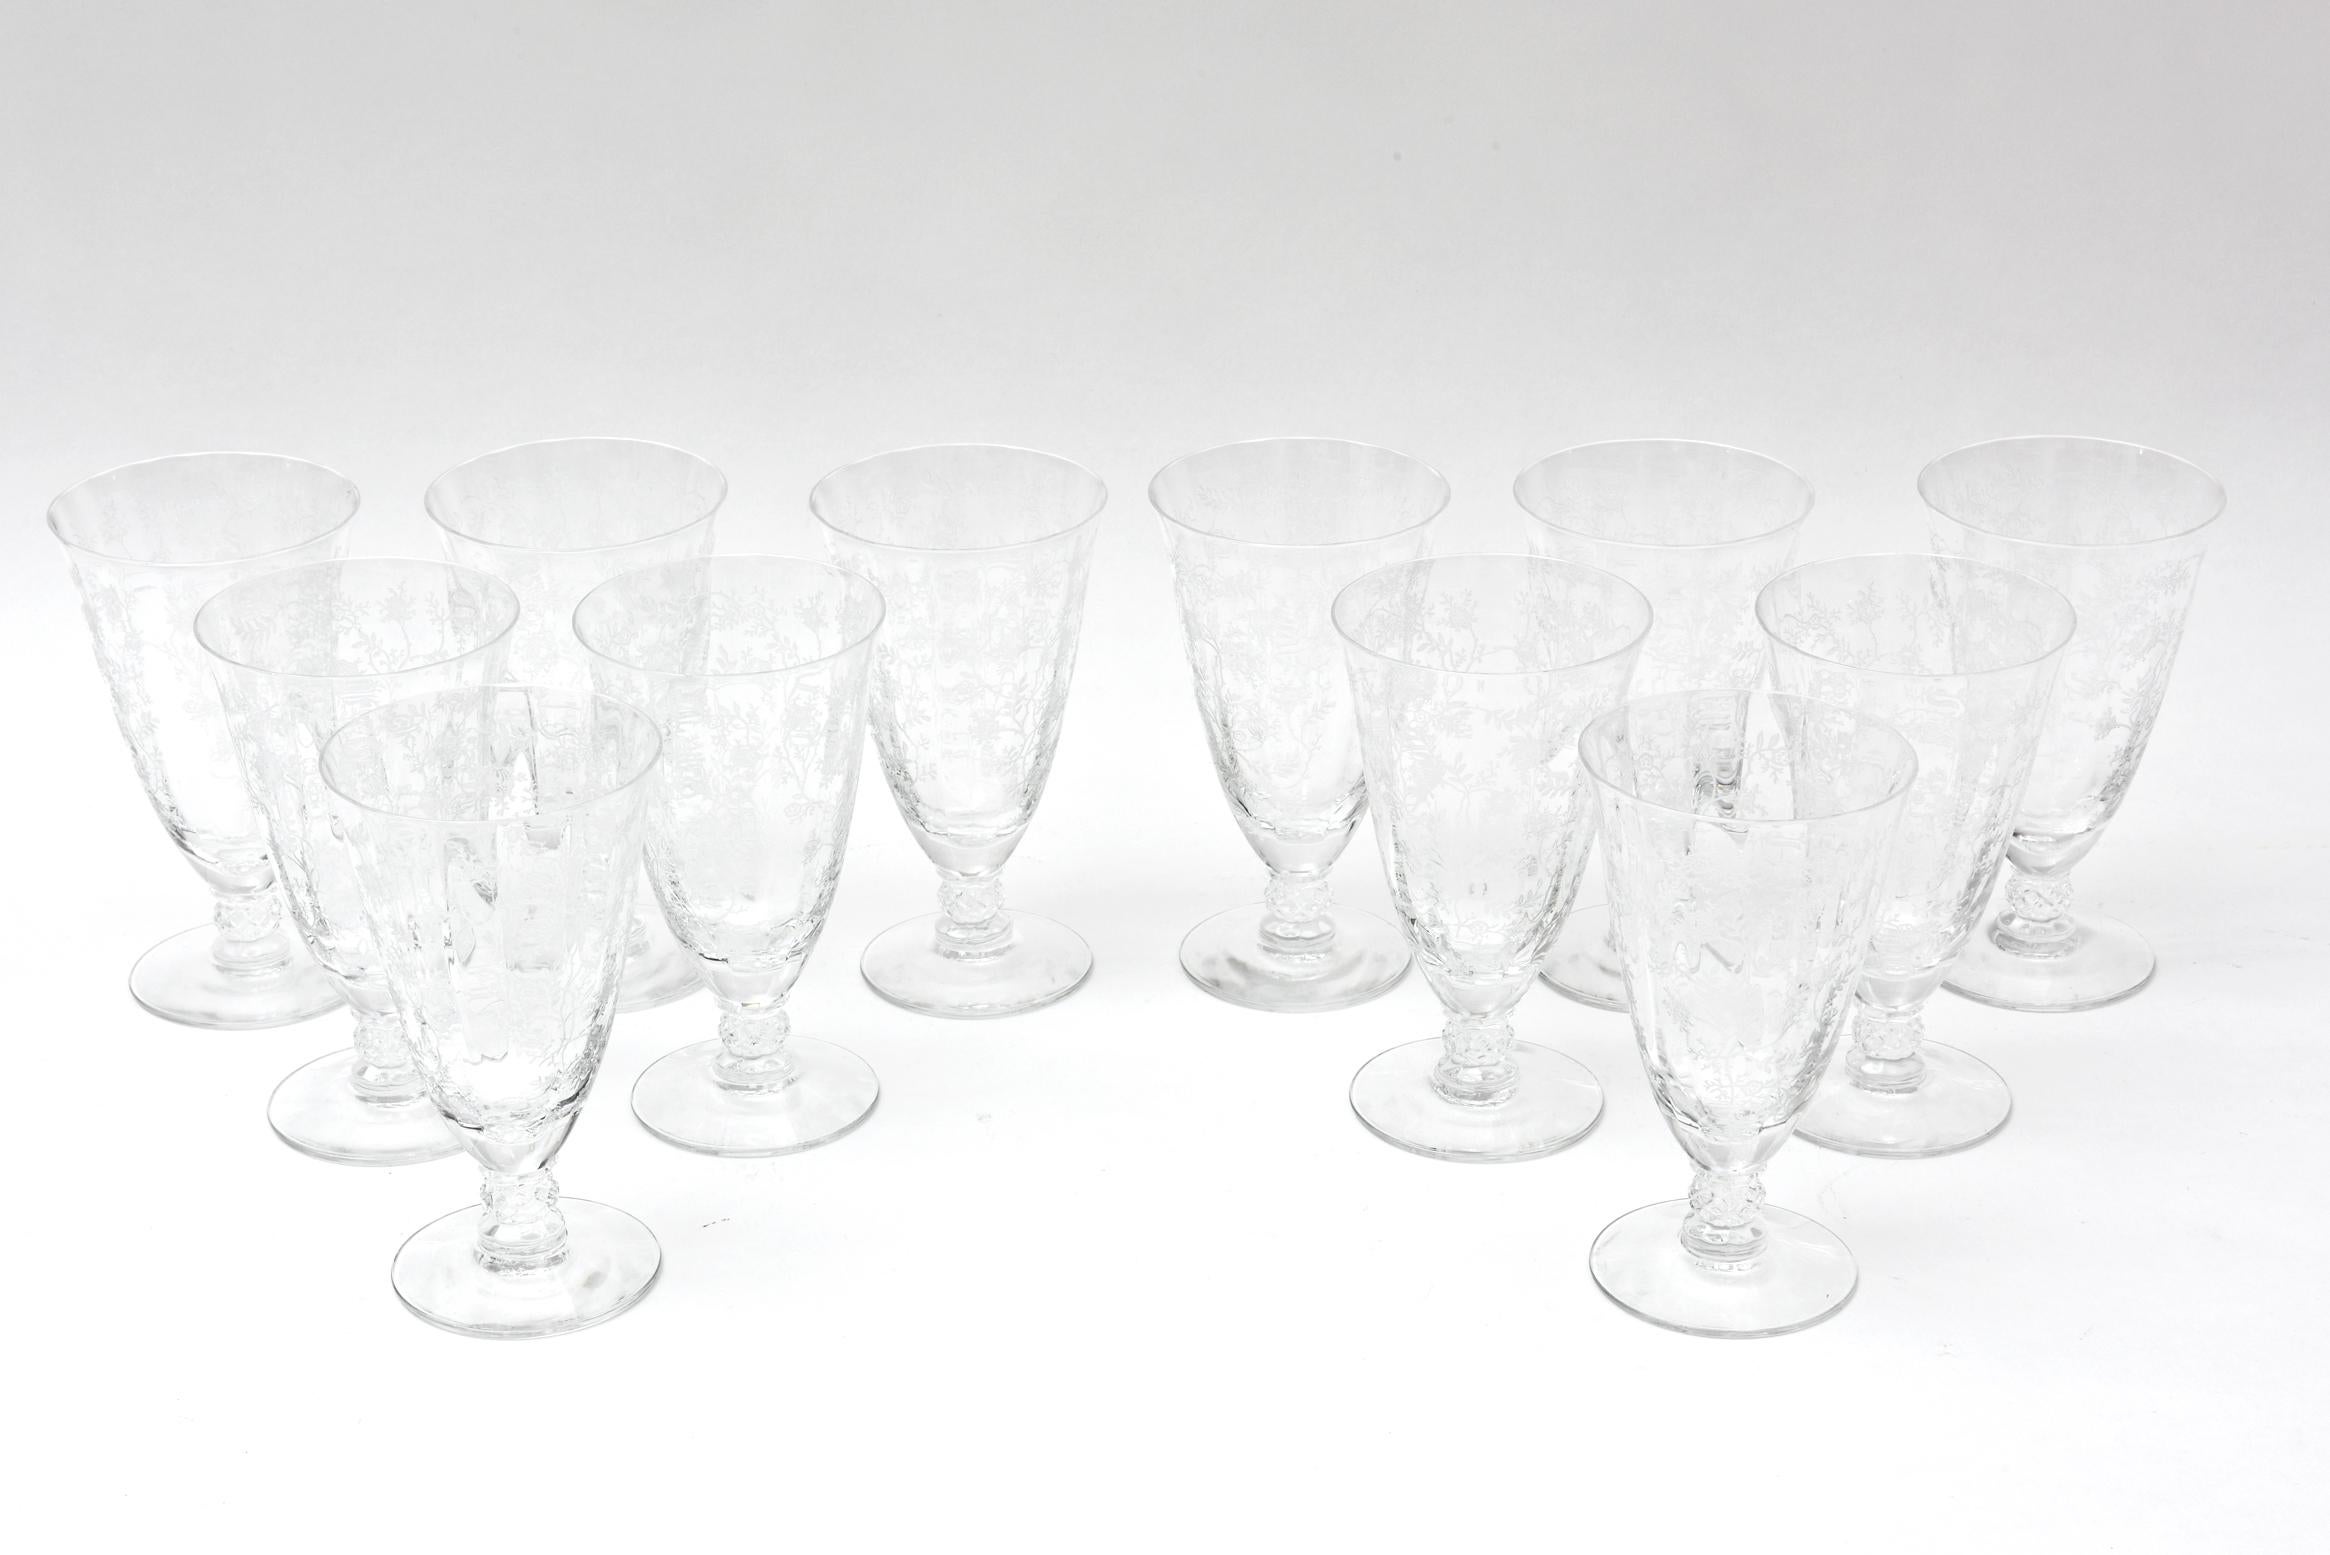 American Set of 12 Iced Tea Glasses, Vintage Etched Design